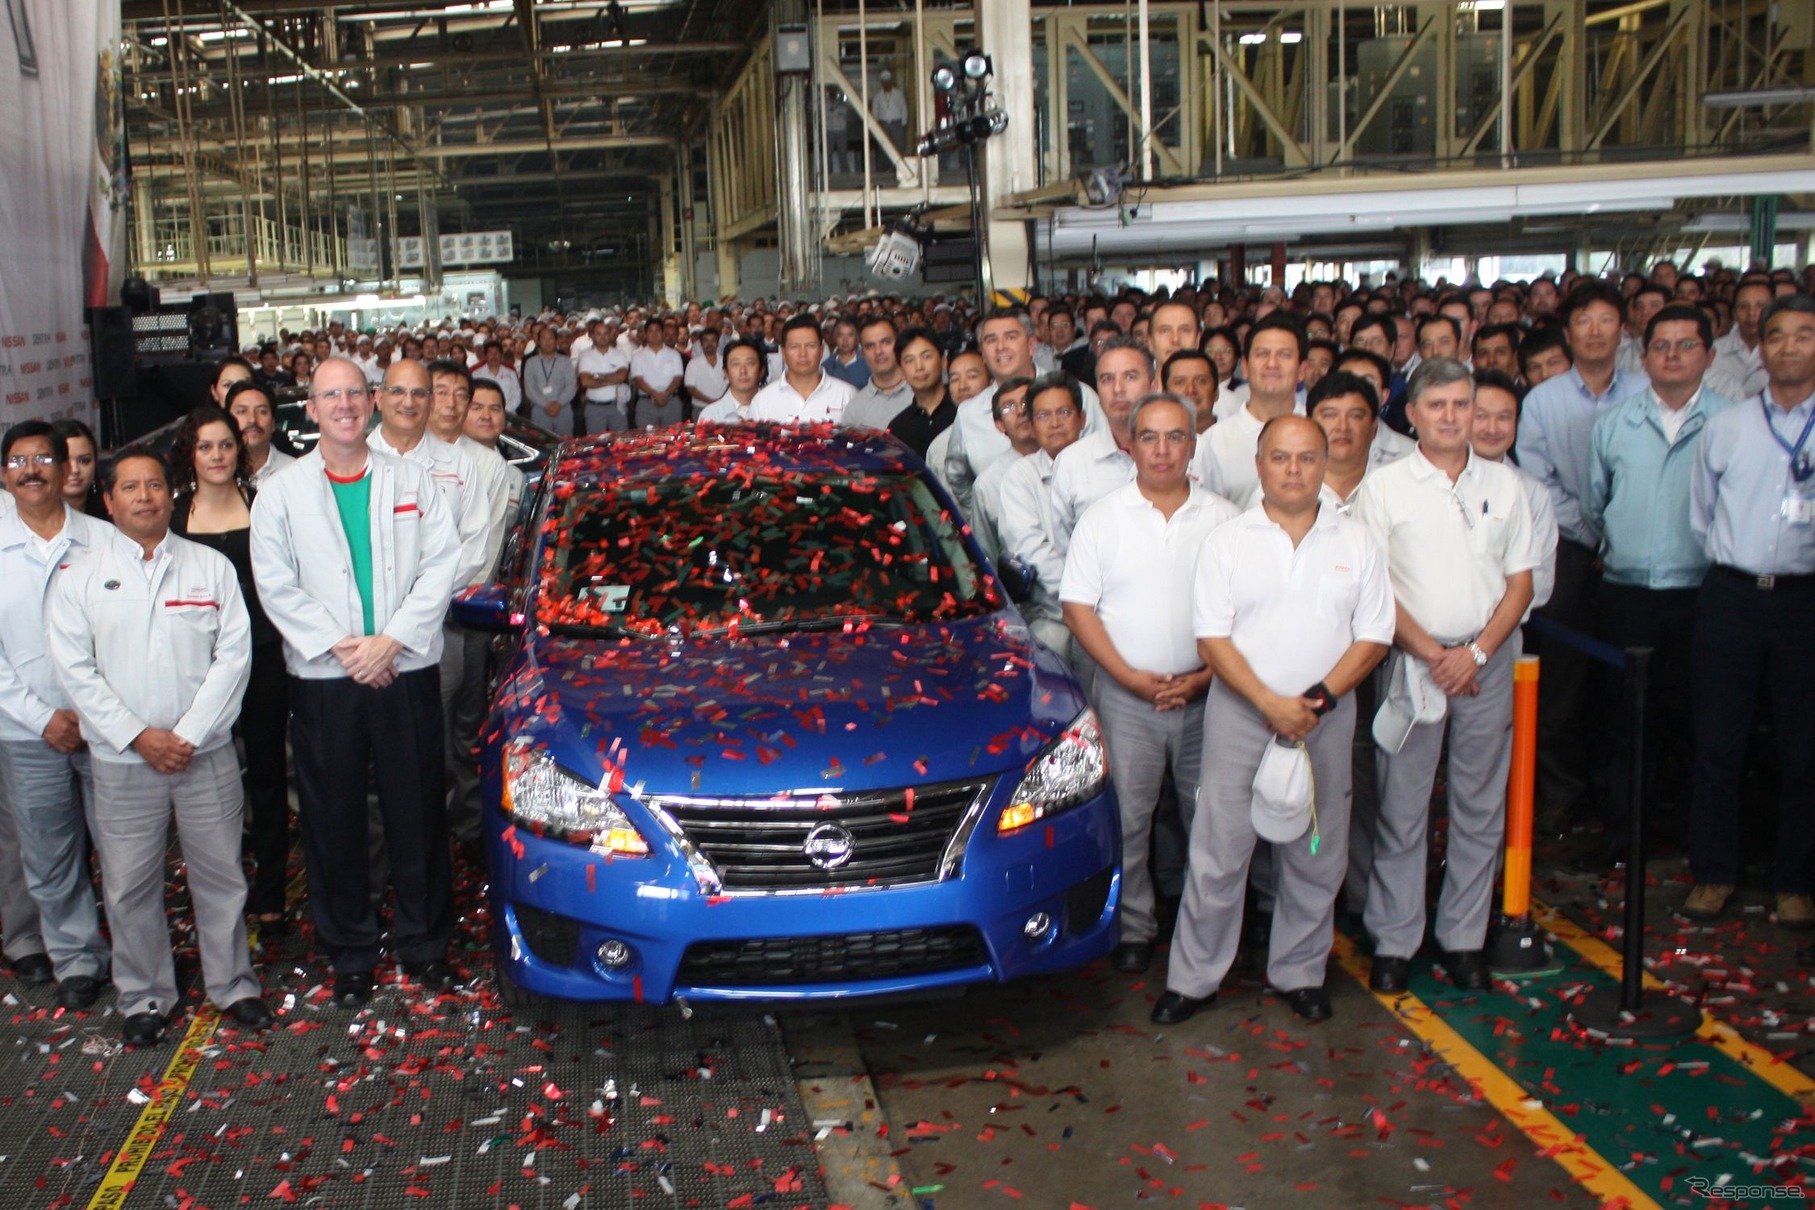 9月7日、メキシコ工場で生産が開始された新型 日産 セントラ